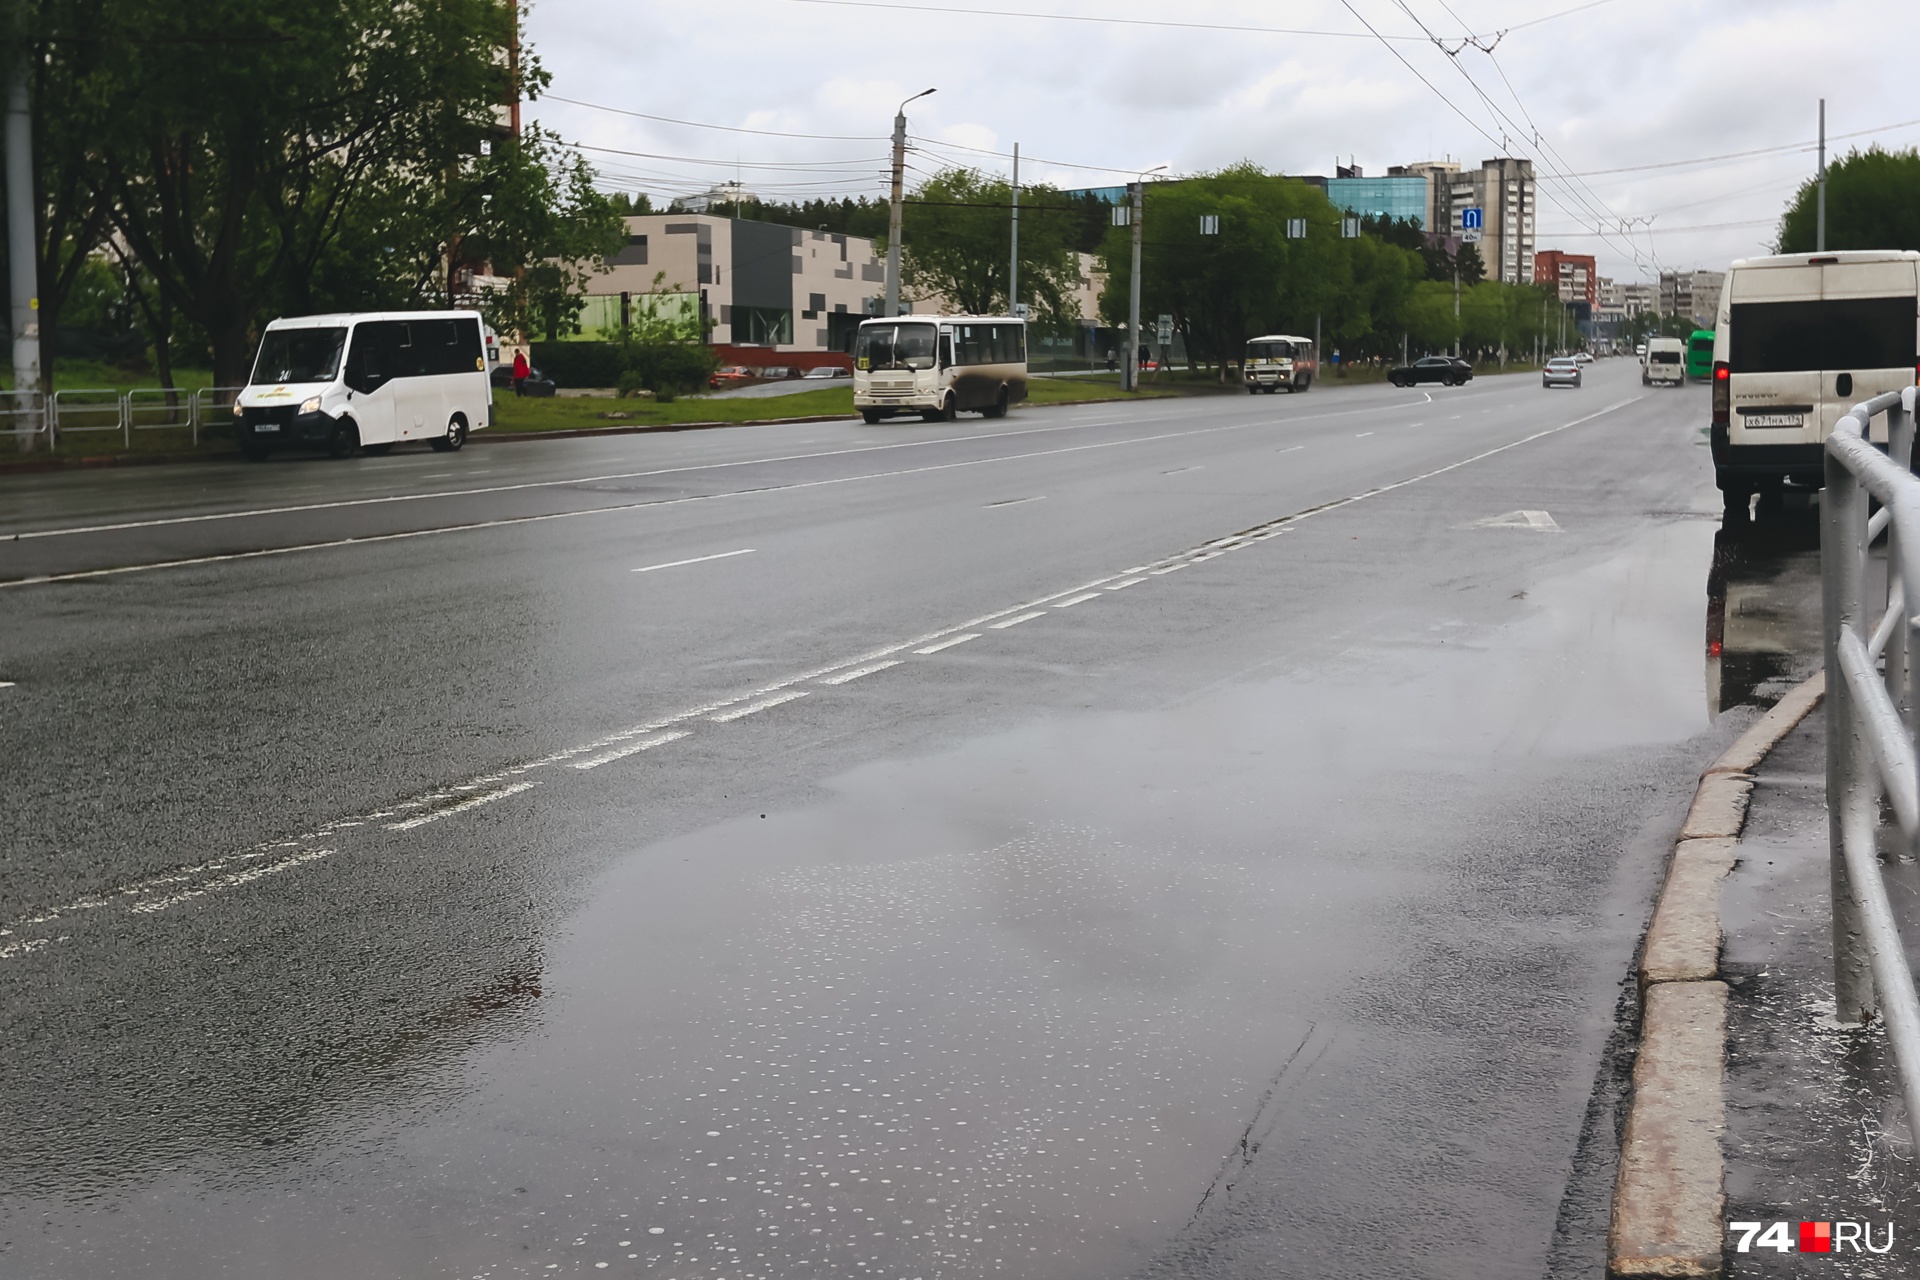 Вид на Комсомольский проспект сразу после поворота направо: для маневра остается не так много места